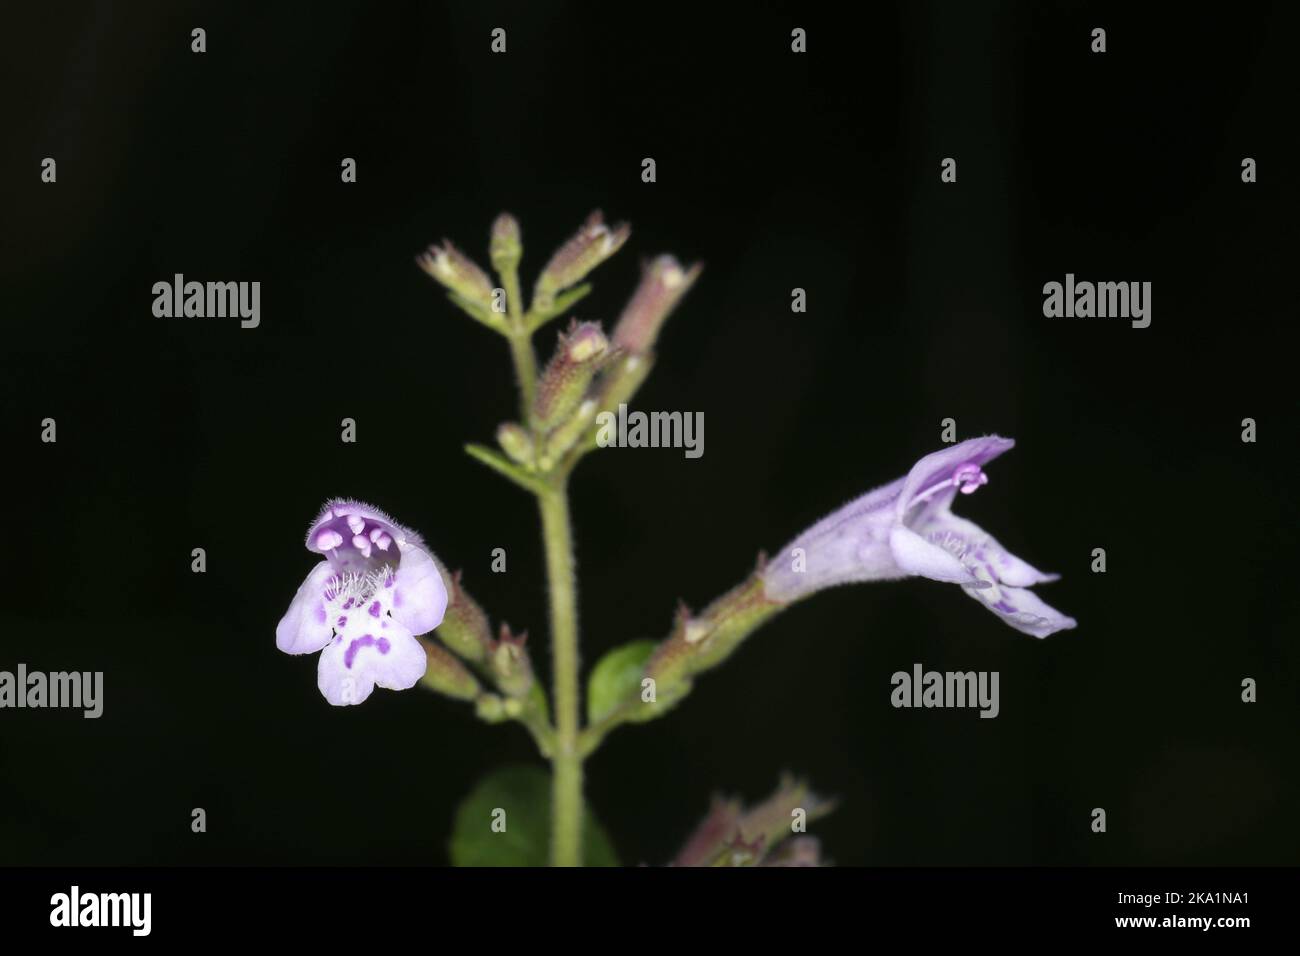 Clinopodium menthifolium subsp. menthifolium, Calamintha sylvatica, Wood Calamint, Lamiaceae. A wild plant shot in the fall. Stock Photo